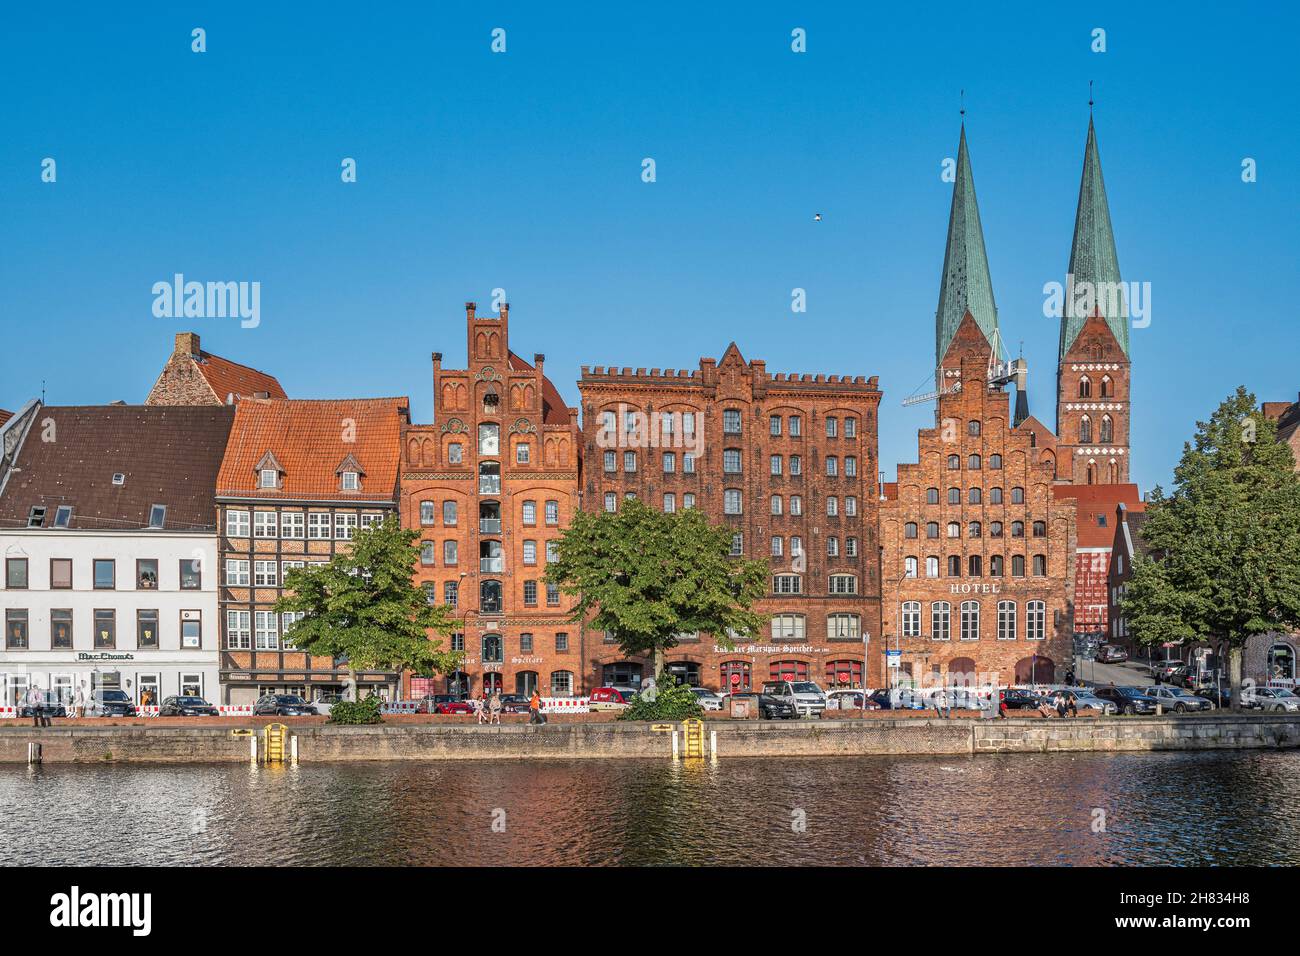 Lübeck, Fischer- und Tourismusboote vertäuten an der Trave.die beiden gotischen Glockentürme der Bordsteinkirche Santa Maria. Lübeck, Deutschland Stockfoto